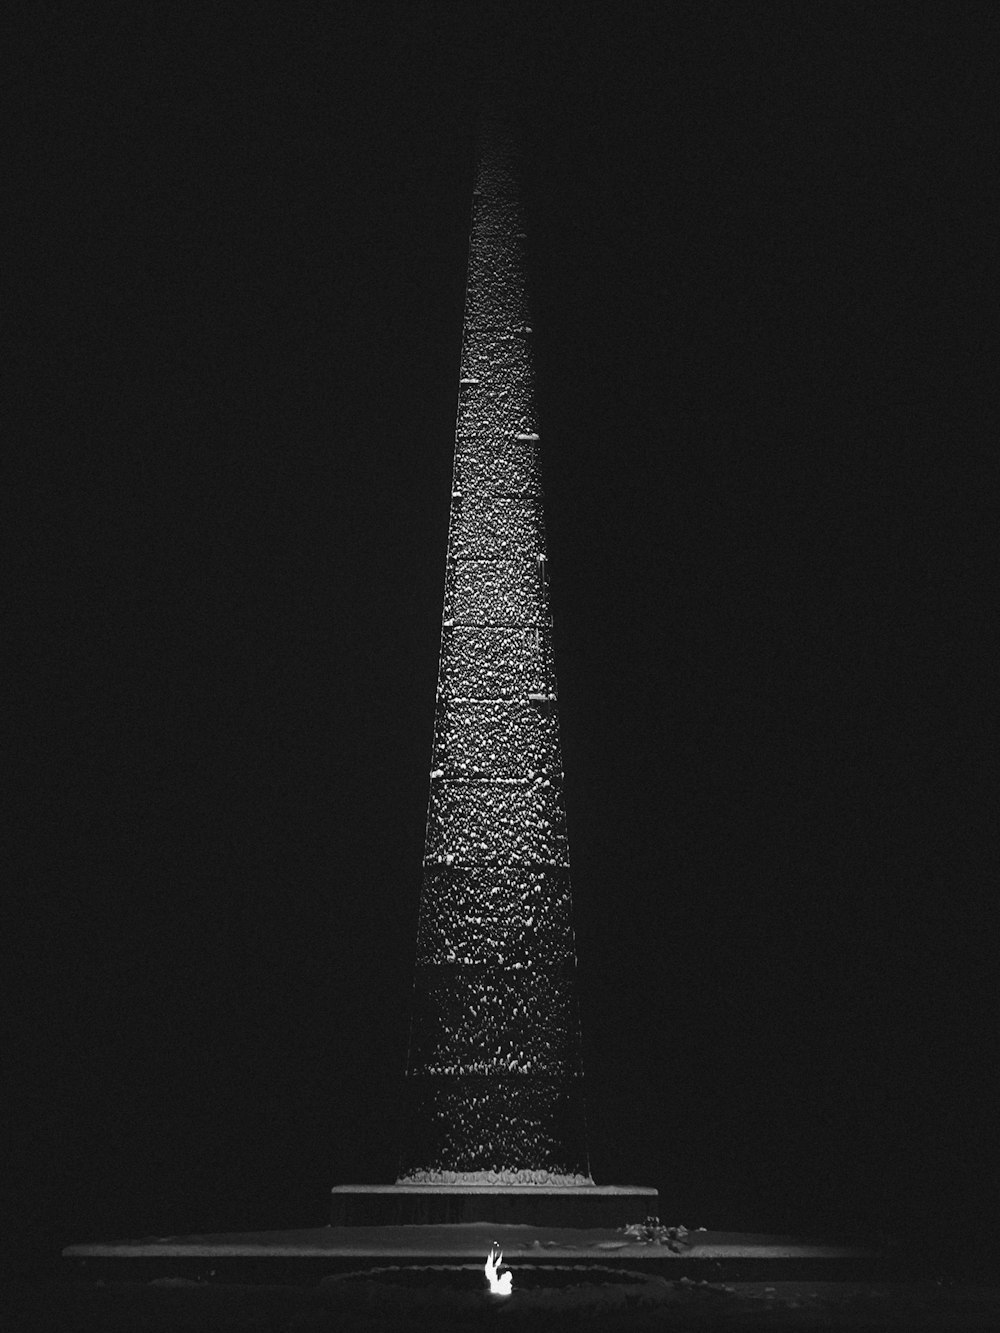 Una foto en blanco y negro de un obelisco alto